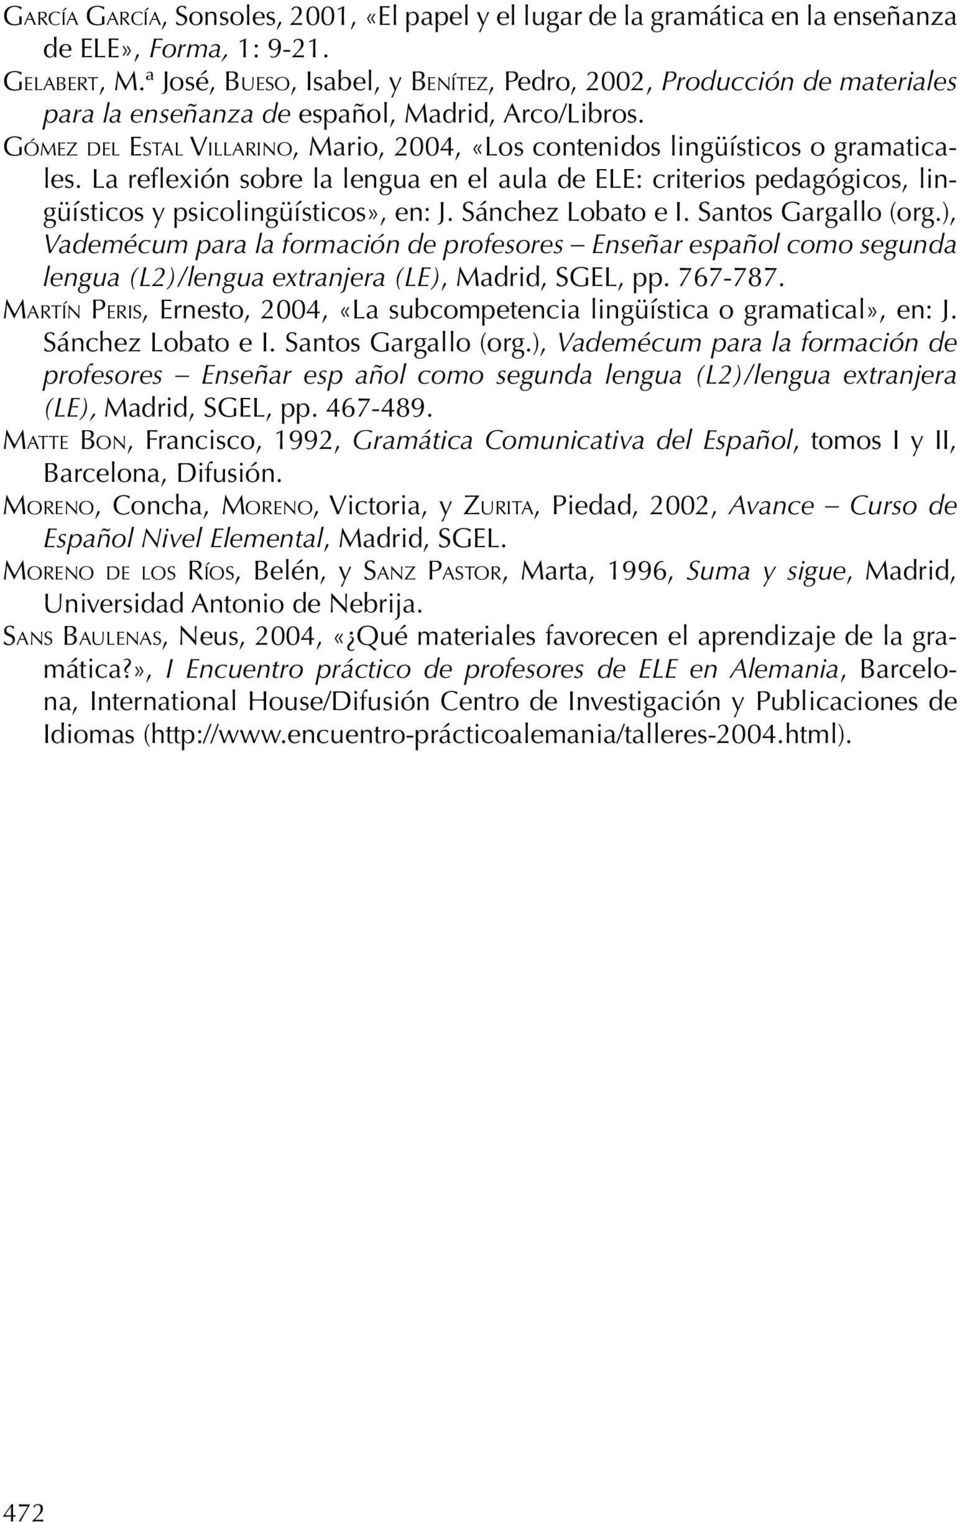 Gómez del Estal Villarino, Mario, 2004, «Los contenidos lingüísticos o gramaticales. La reflexión sobre la lengua en el aula de ELE: criterios pedagógicos, lingüísticos y psicolingüísticos», en: J.